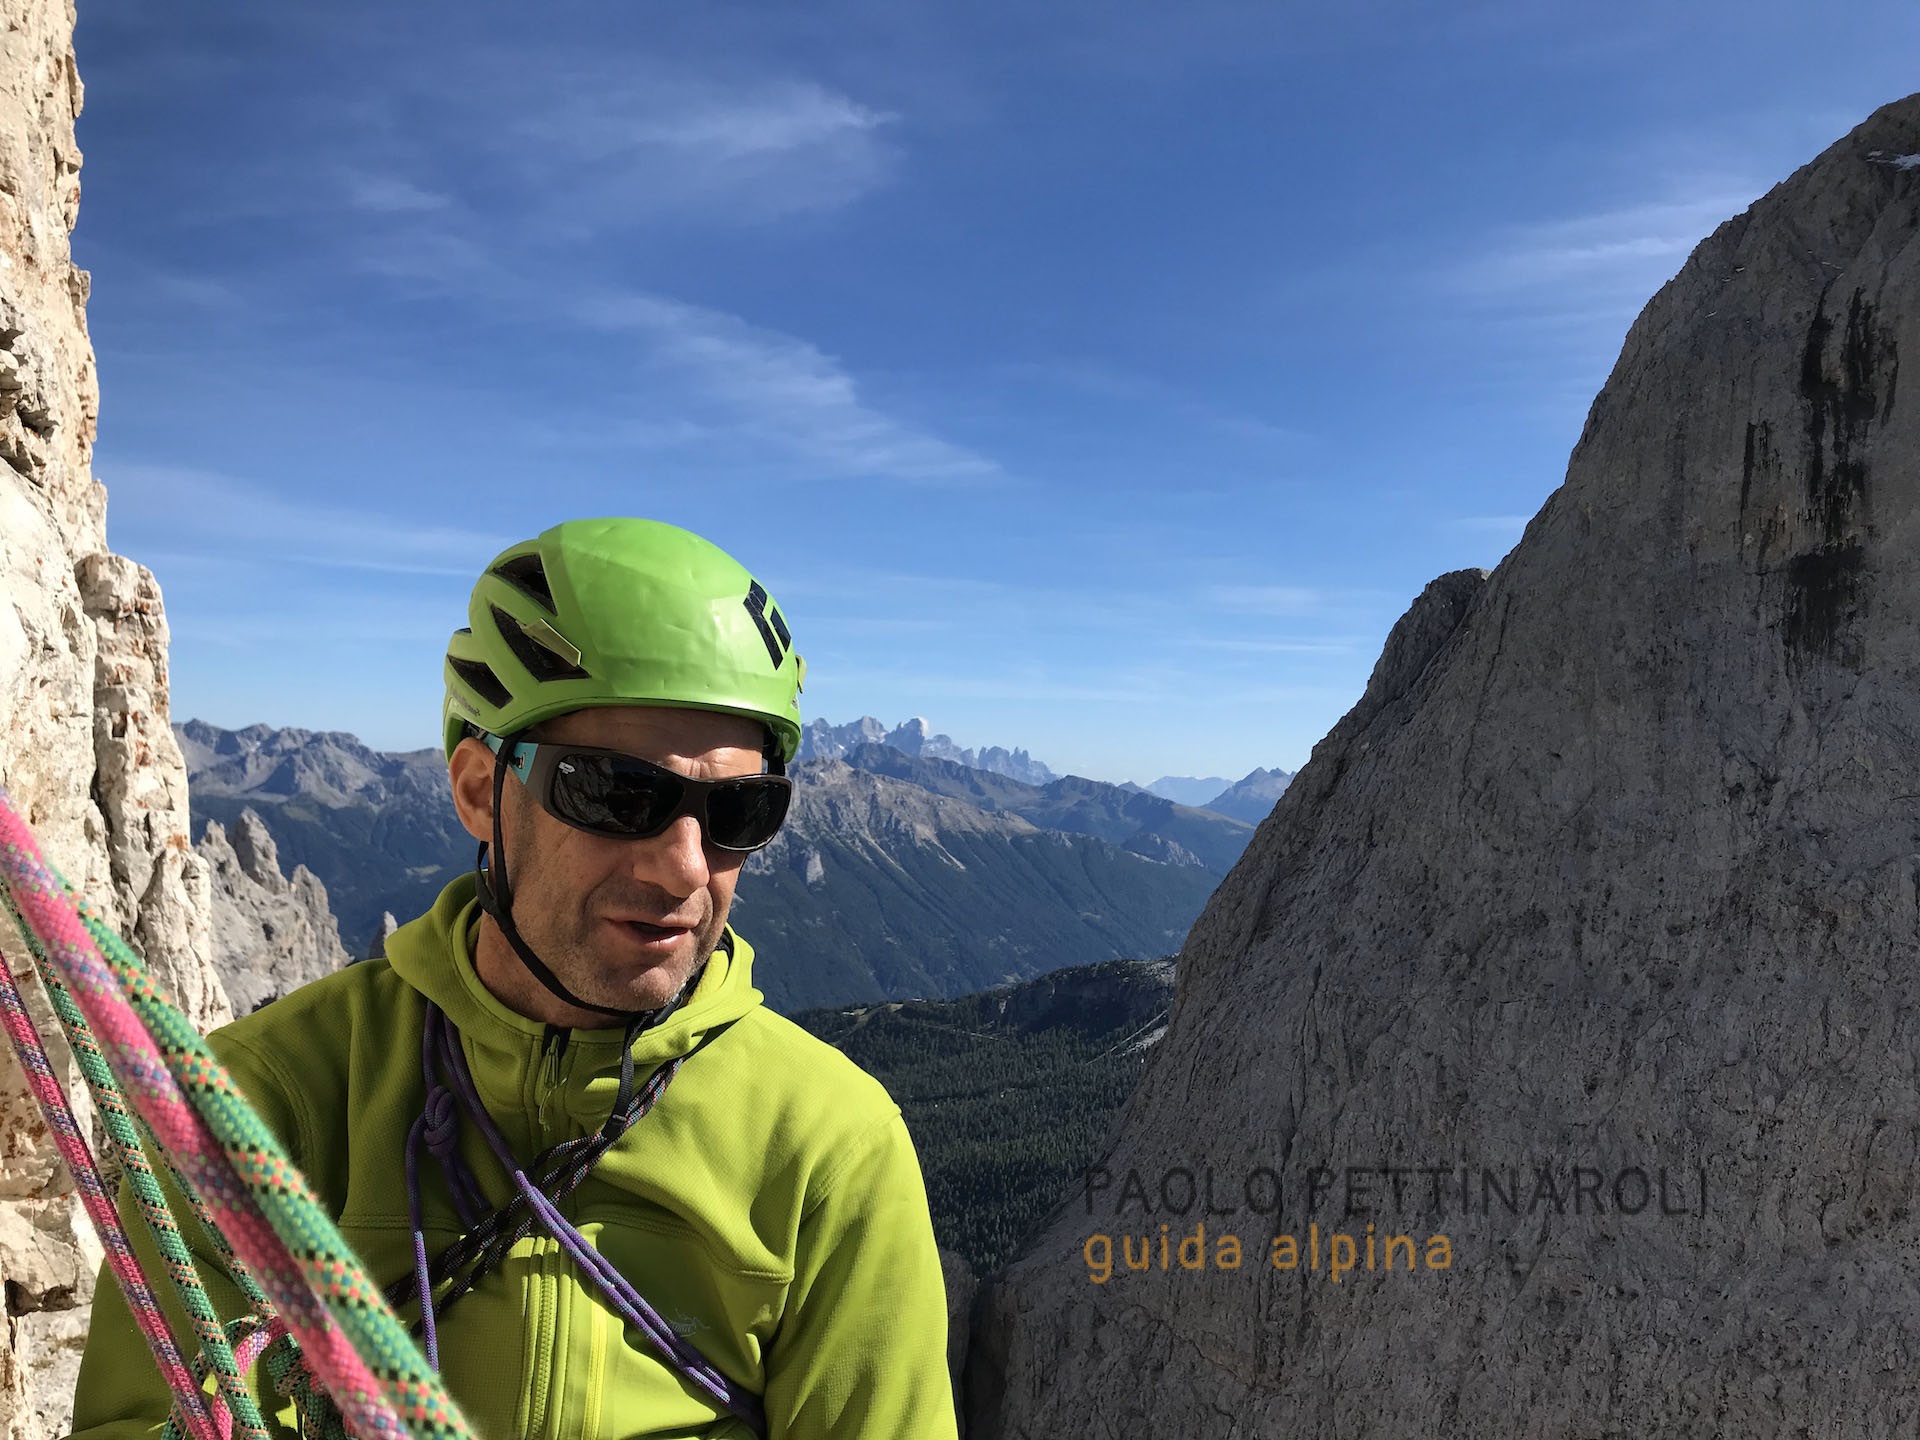 dolomiti - 1 di 6-arrampicata_paolo pettinaroli guida alpina